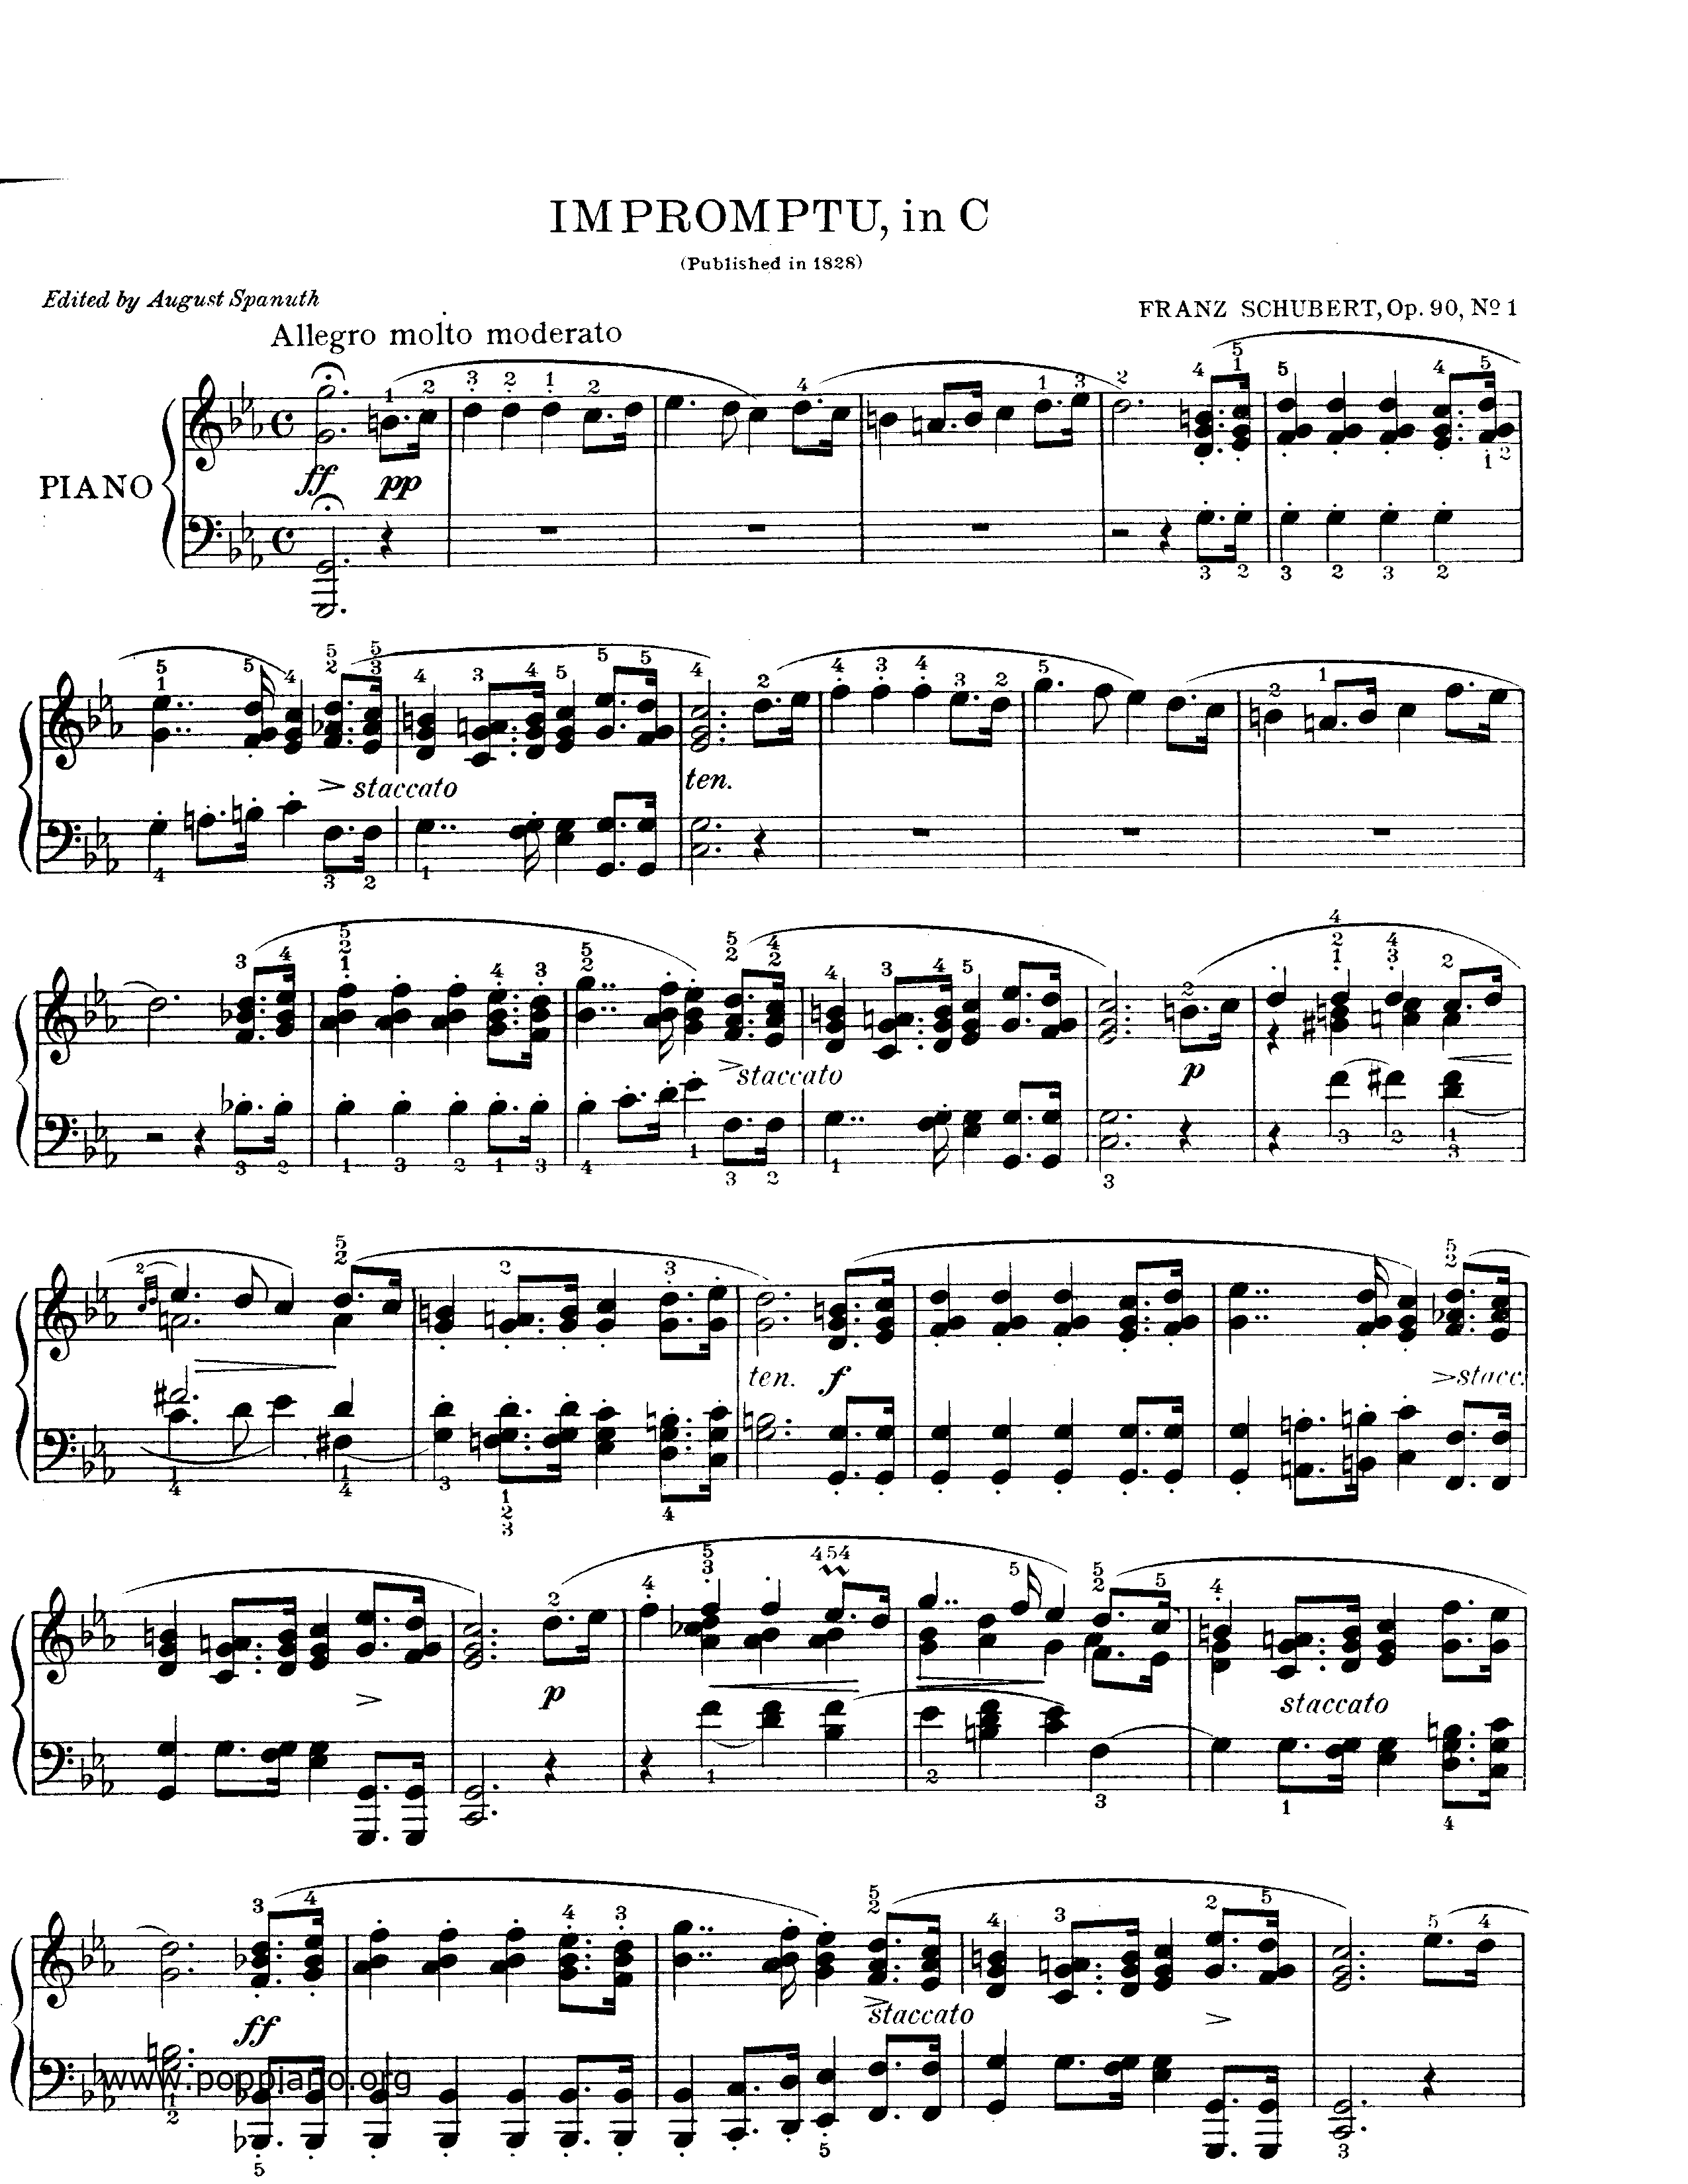 Impromptu Op.90 No. 1 Score